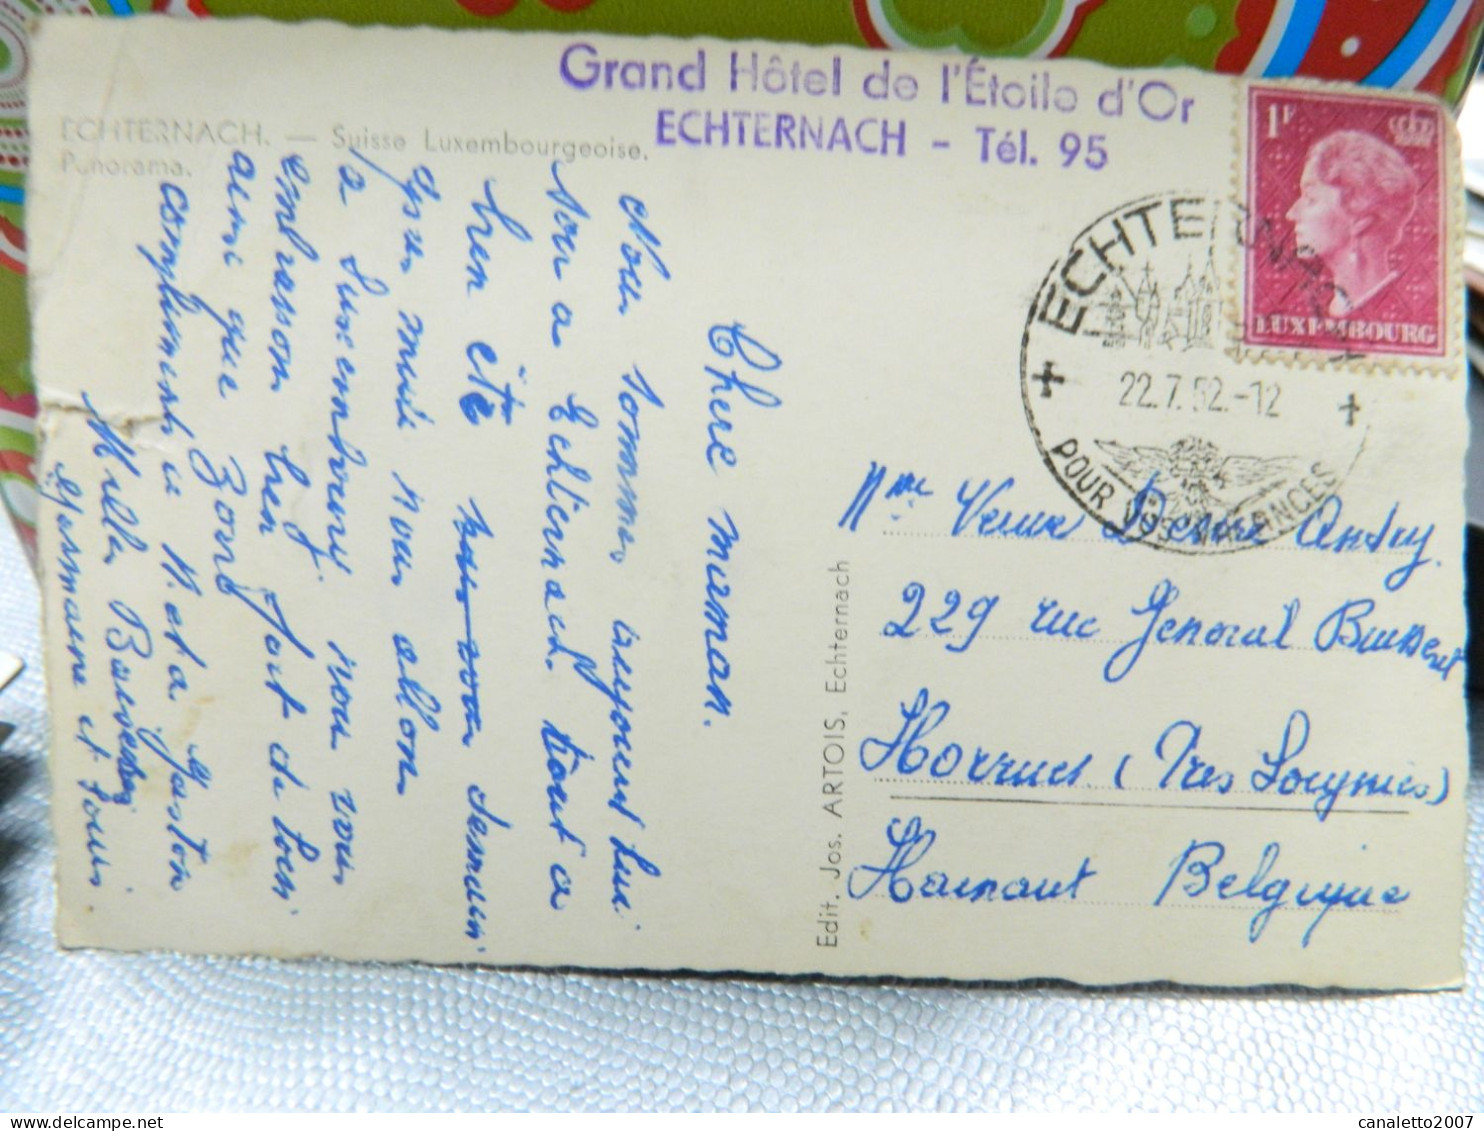 ECHTERNACH: TRES BEAU PANORAMA EN 1952 -CACHET GRAND HOTEL DE L'ETOILE D'OR-ATTENTION COUPURE MILIEU DROIT - Echternach